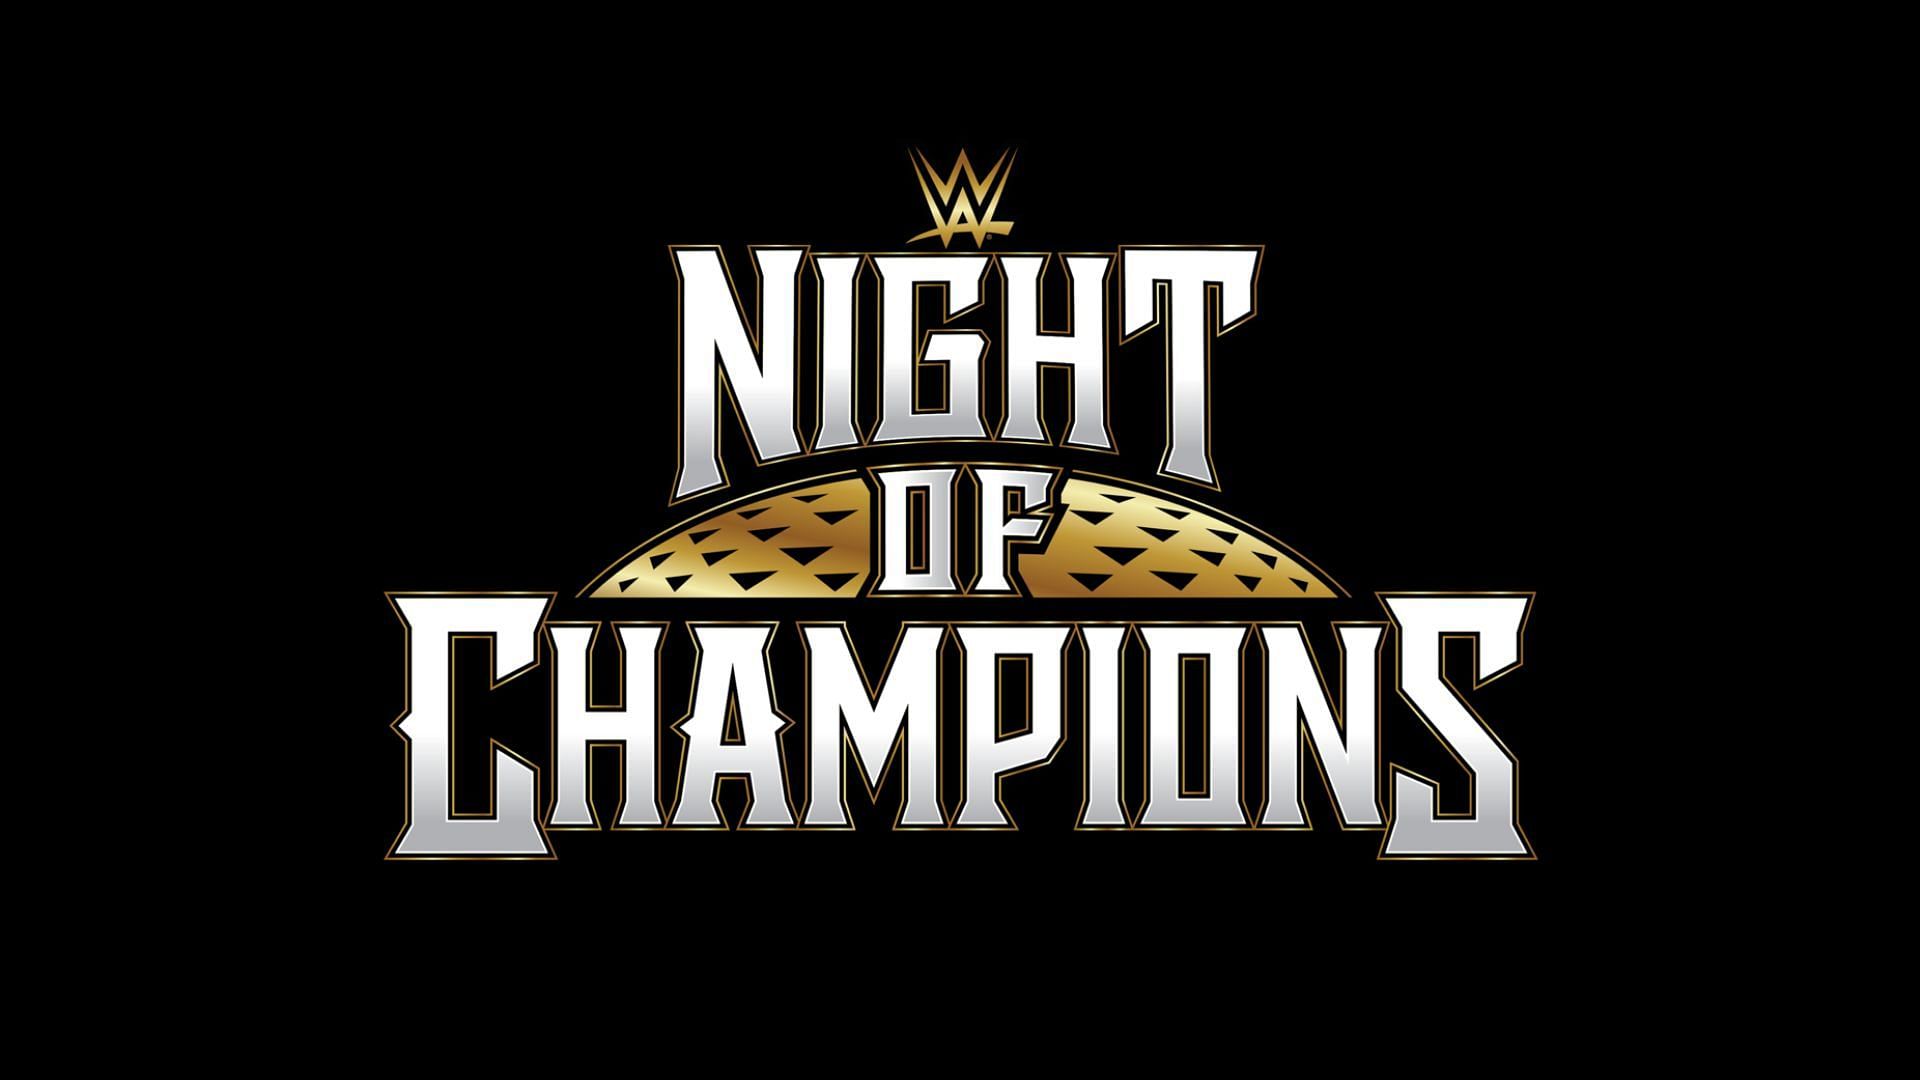 WWE Night of Champions will be held in Saudi Arabia